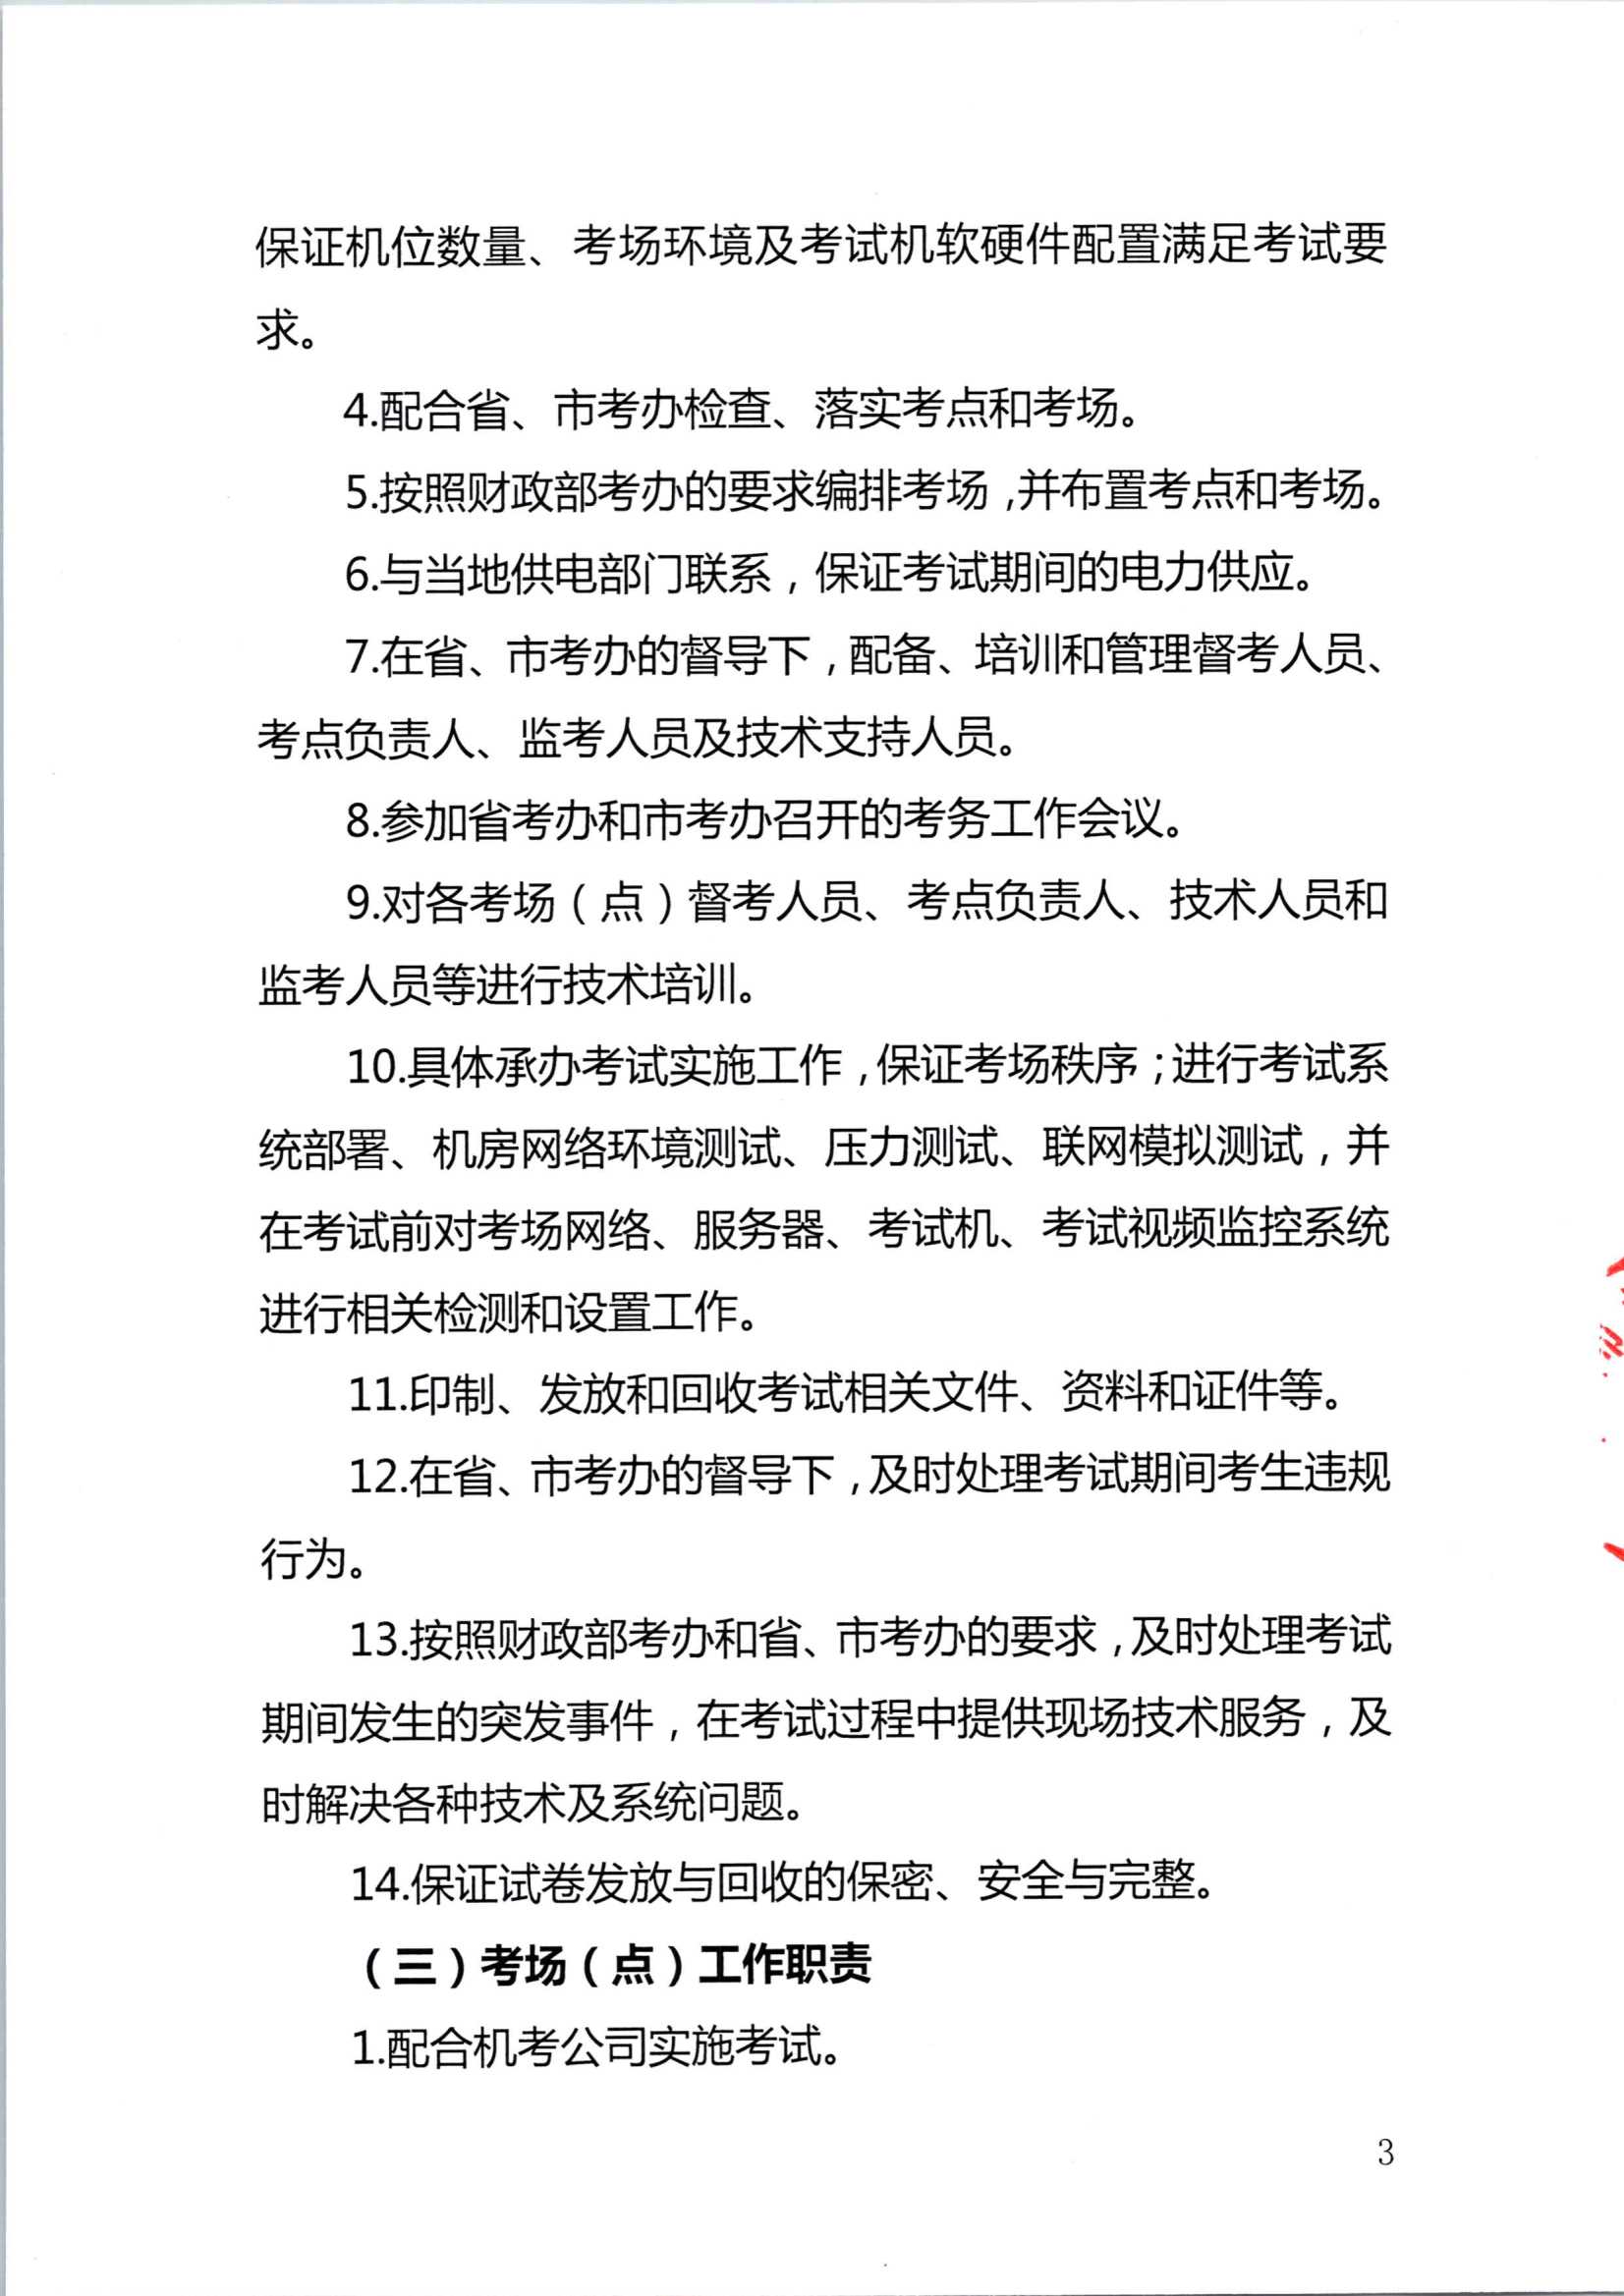 2020年注册会计师全国统一考试深圳考区工作方案_3.Png